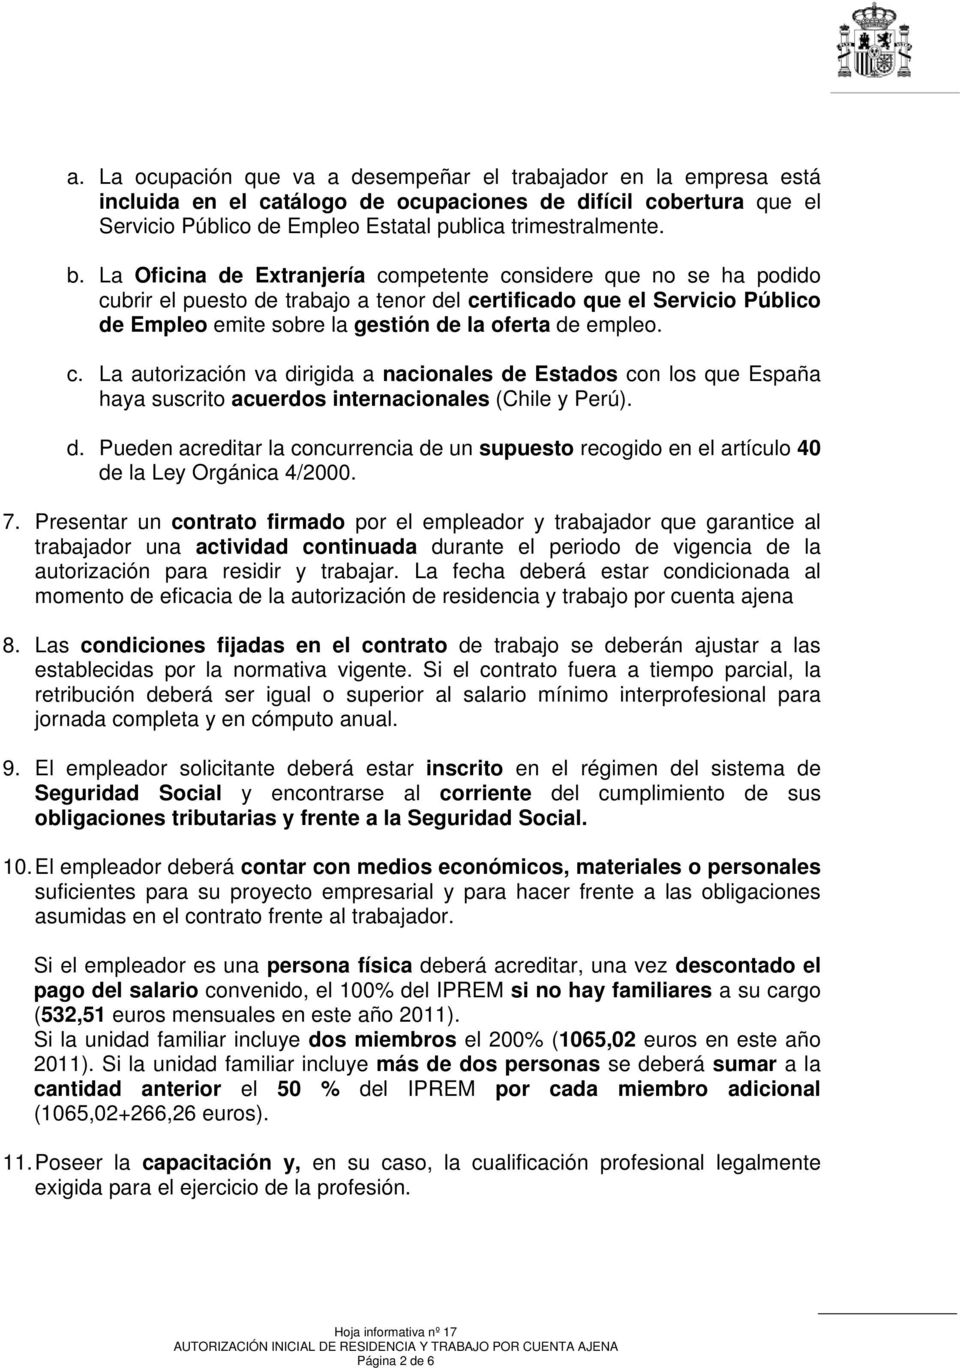 c. La autorización va dirigida a nacionales de Estados con los que España haya suscrito acuerdos internacionales (Chile y Perú). d. Pueden acreditar la concurrencia de un supuesto recogido en el artículo 40 de la Ley Orgánica 4/2000.